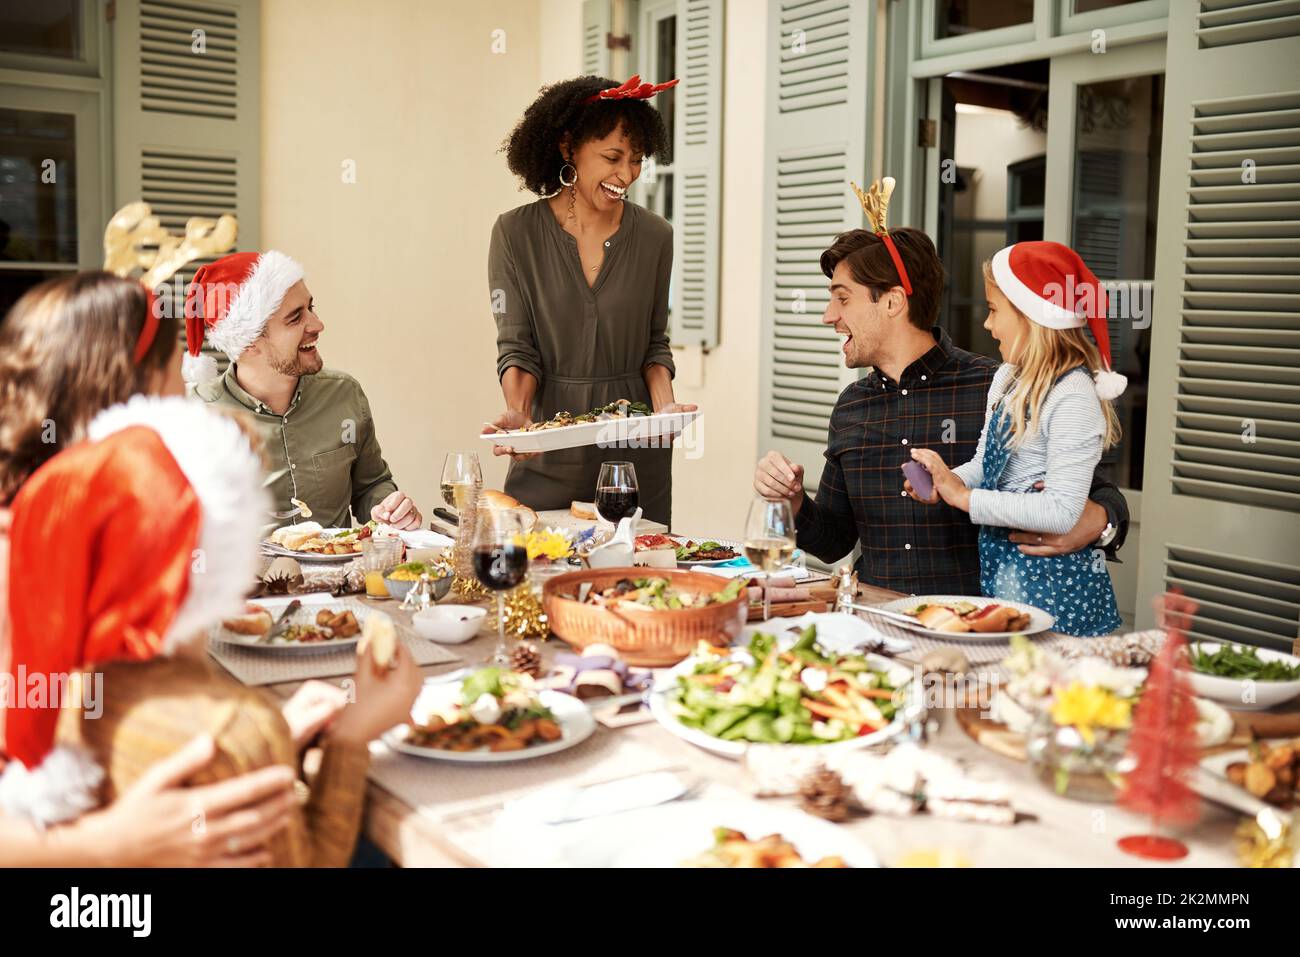 Tout est question de nourriture et d'être joyeux. Photo courte d'une famille heureuse avec déjeuner de Noël ensemble. Banque D'Images